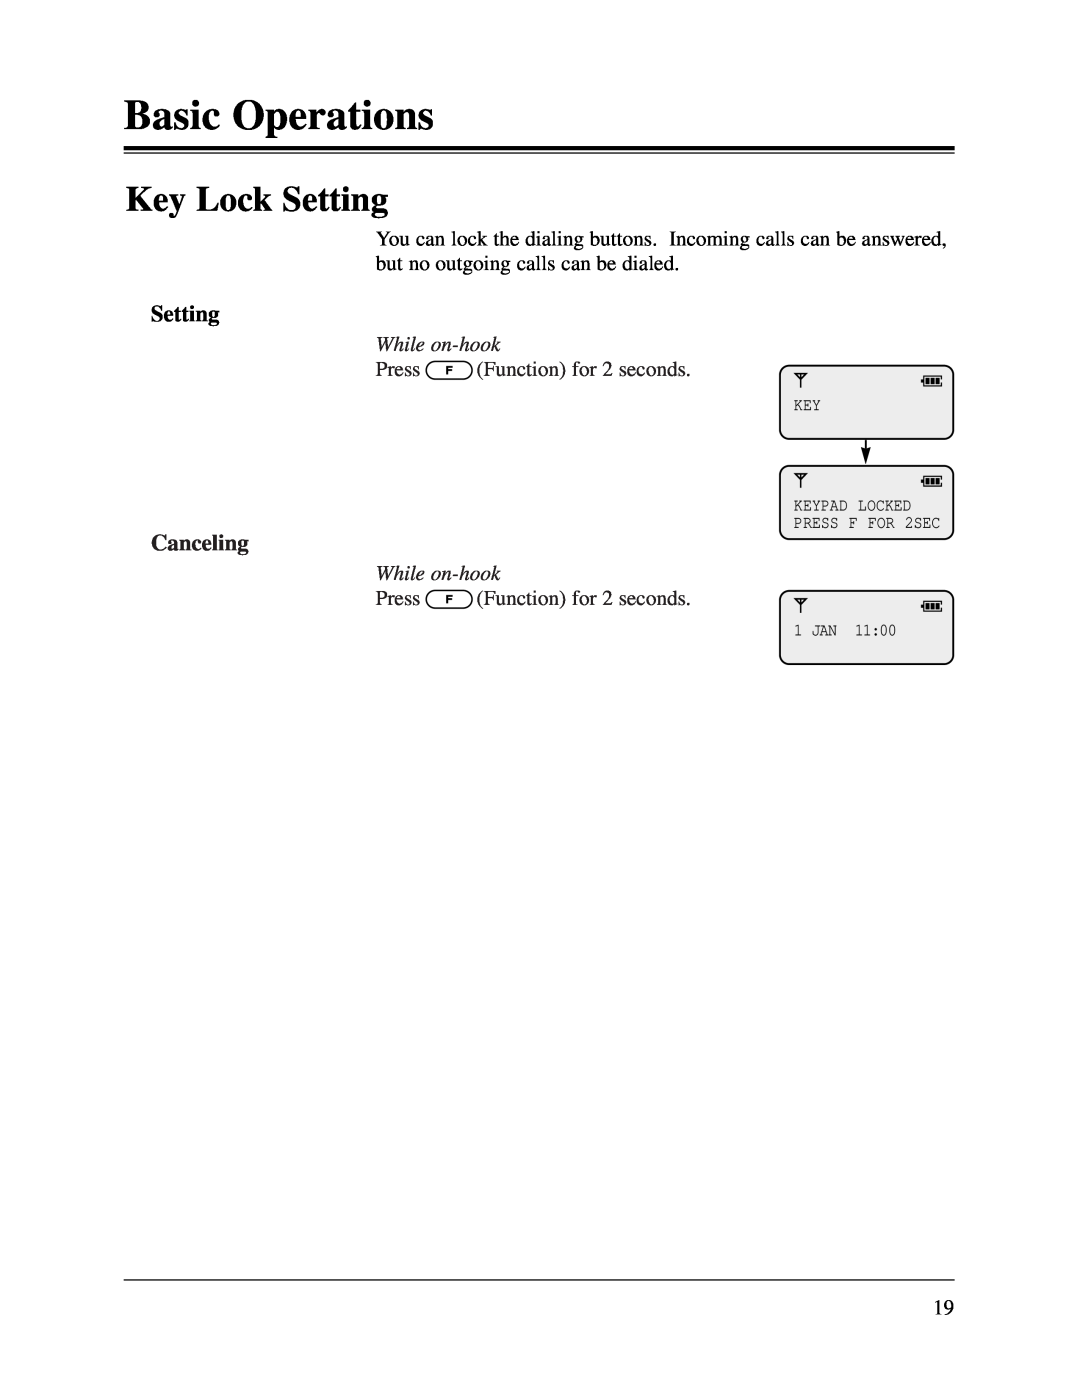 Panasonic KX-TD816CE Key Lock Setting, Canceling, While on-hook, Basic Operations, KEY KEYPAD LOCKED PRESS F FOR 2SEC 